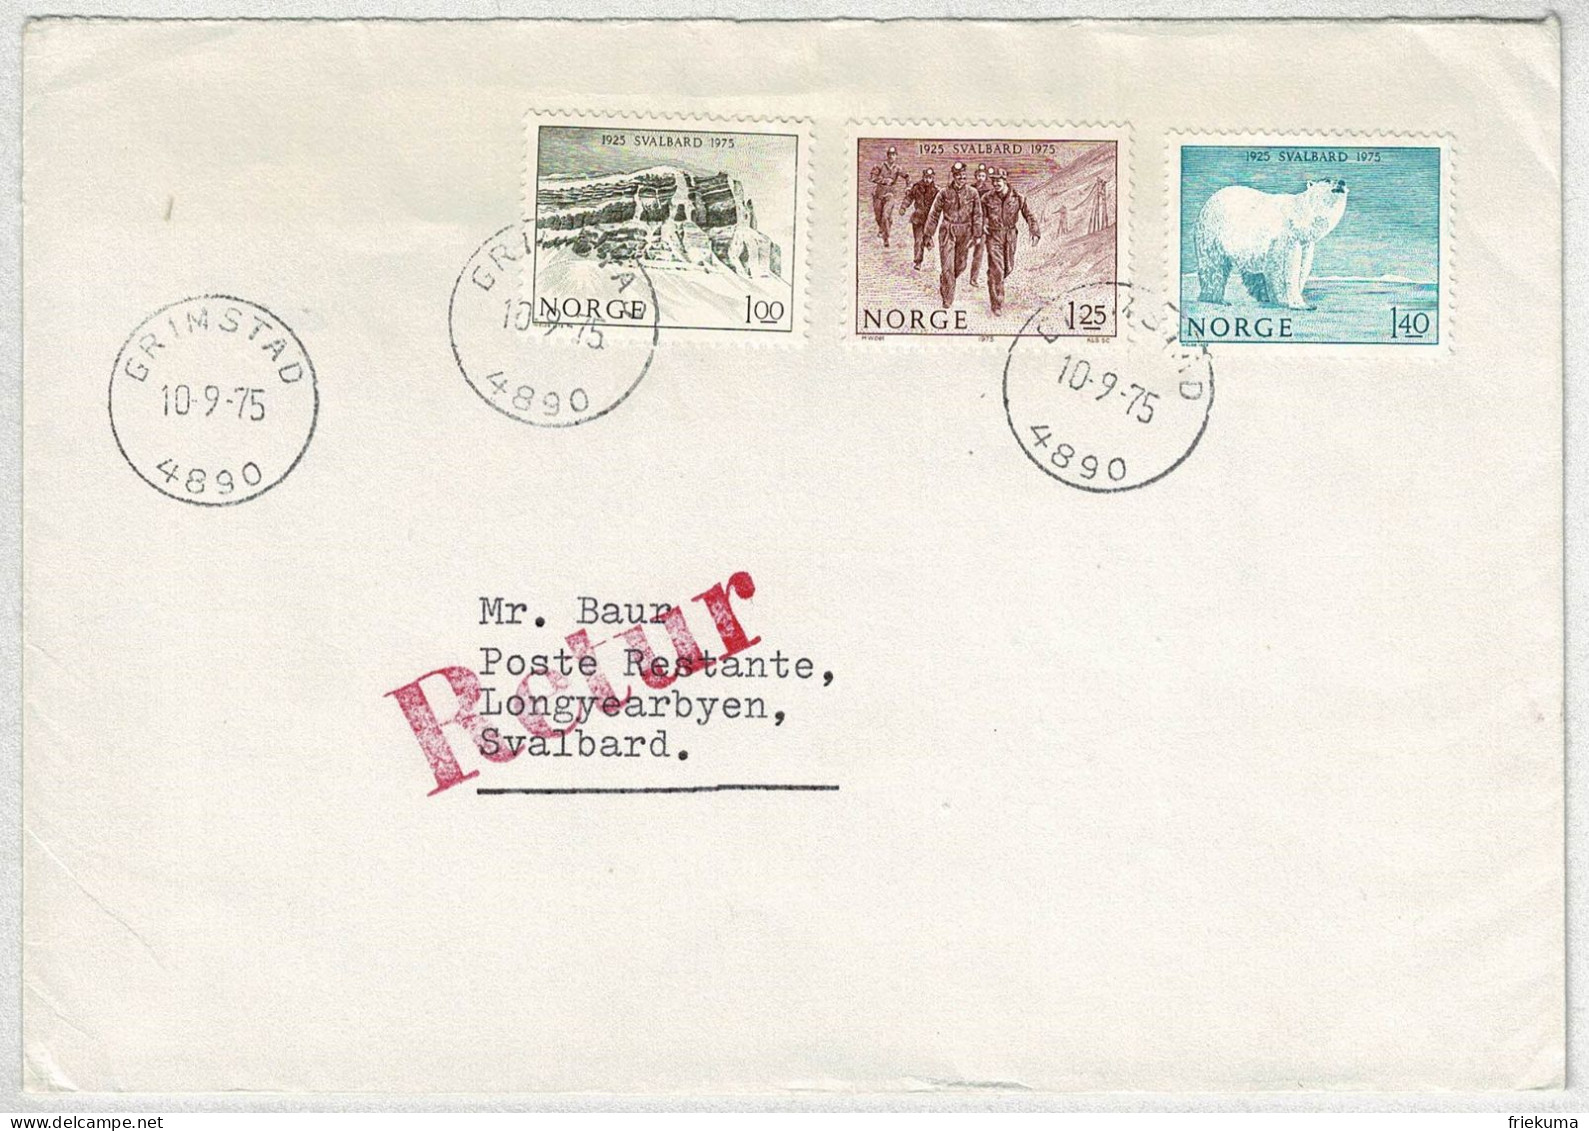 Norwegen / Norge 1975, Brief Grimstad Erstflug SAS Longyearbyen - Tromso, Retour, Spitzbergenvertrag, Eisbär - Briefe U. Dokumente